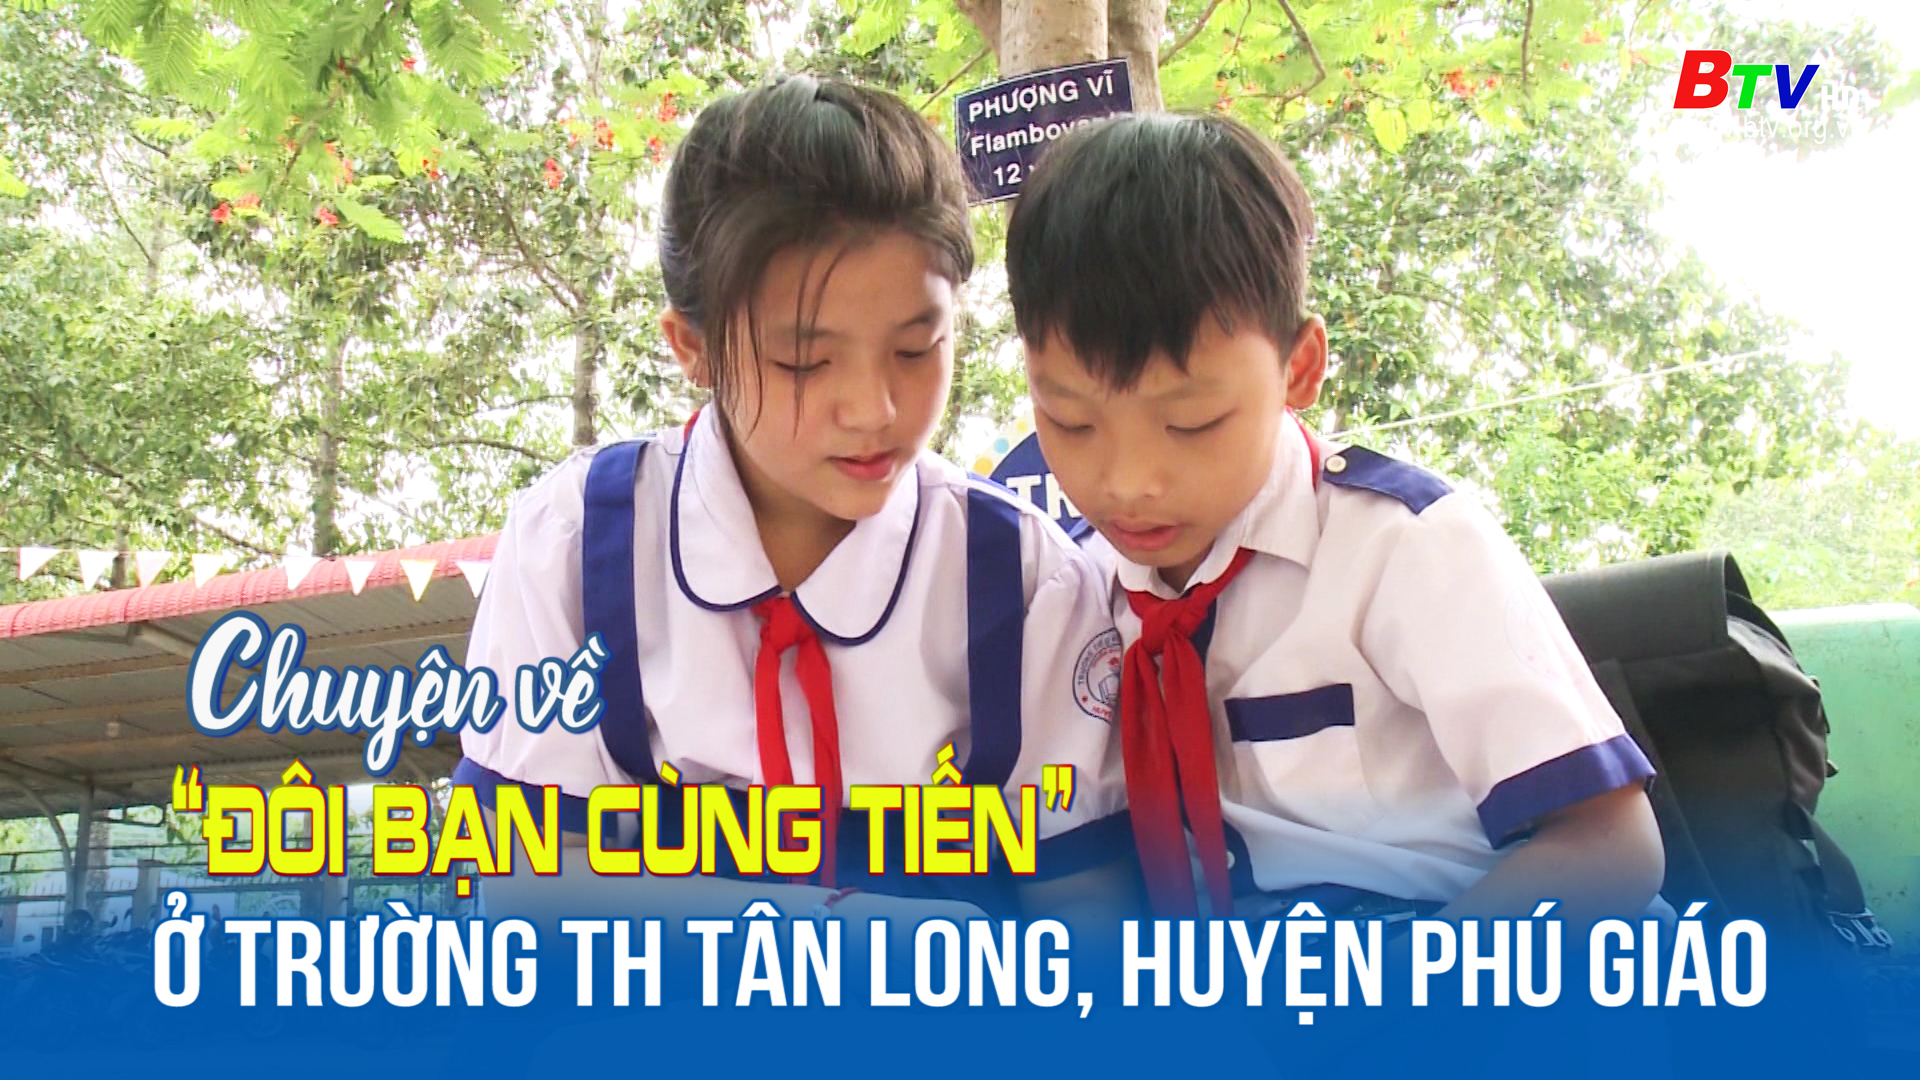 Chuyện về “Đôi bạn cùng tiến” ở trường tiểu học Tân Long, huyện Phú Giáo